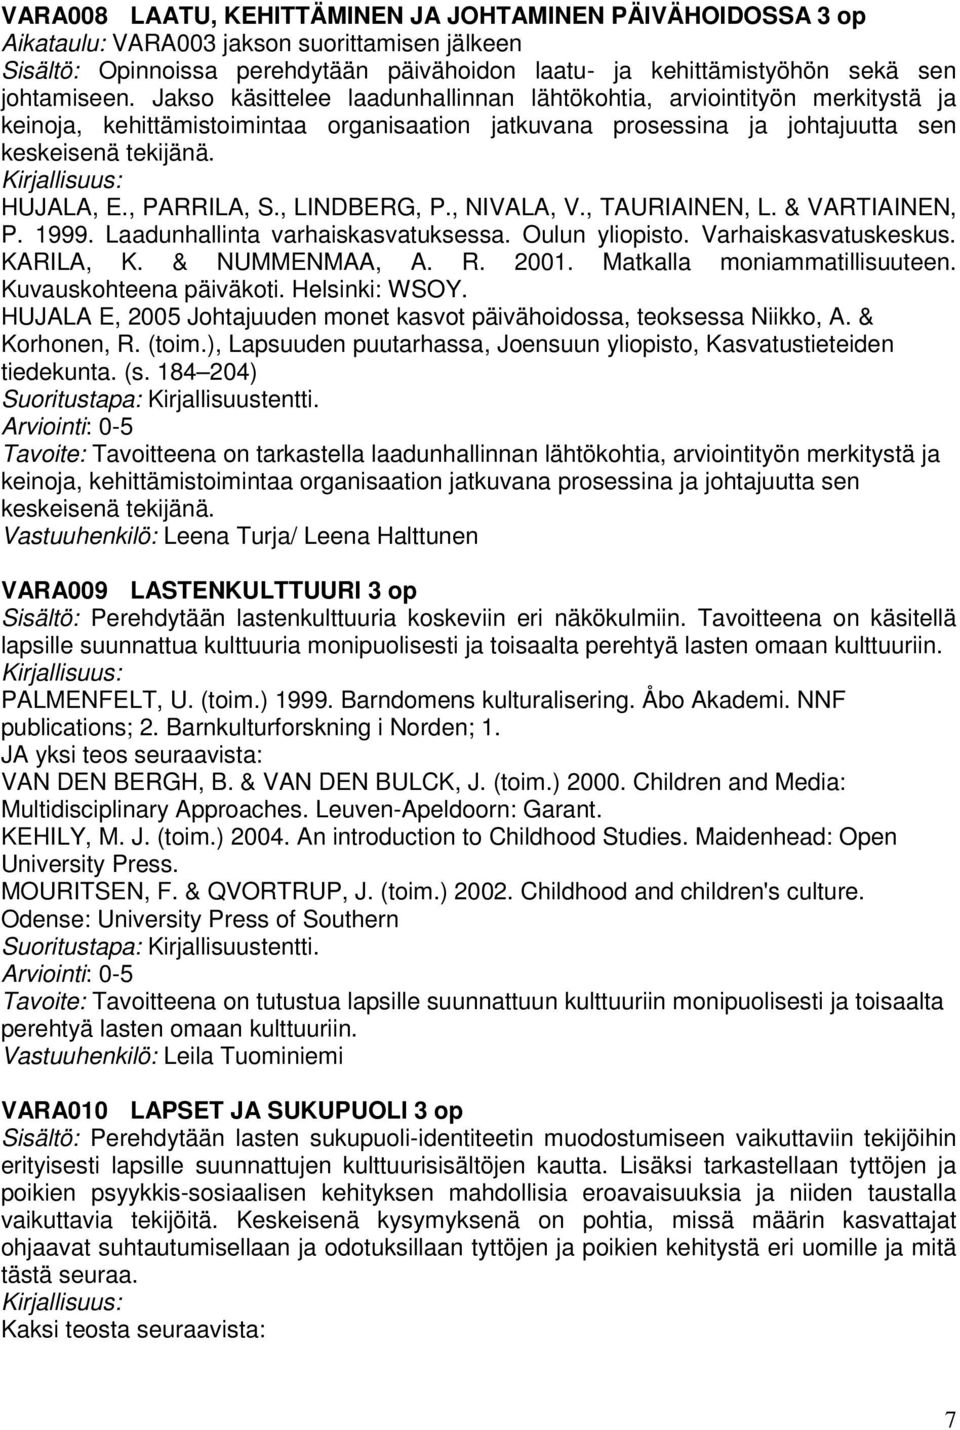 HUJALA, E., PARRILA, S., LINDBERG, P., NIVALA, V., TAURIAINEN, L. & VARTIAINEN, P. 1999. Laadunhallinta varhaiskasvatuksessa. Oulun yliopisto. Varhaiskasvatuskeskus. KARILA, K. & NUMMENMAA, A. R.